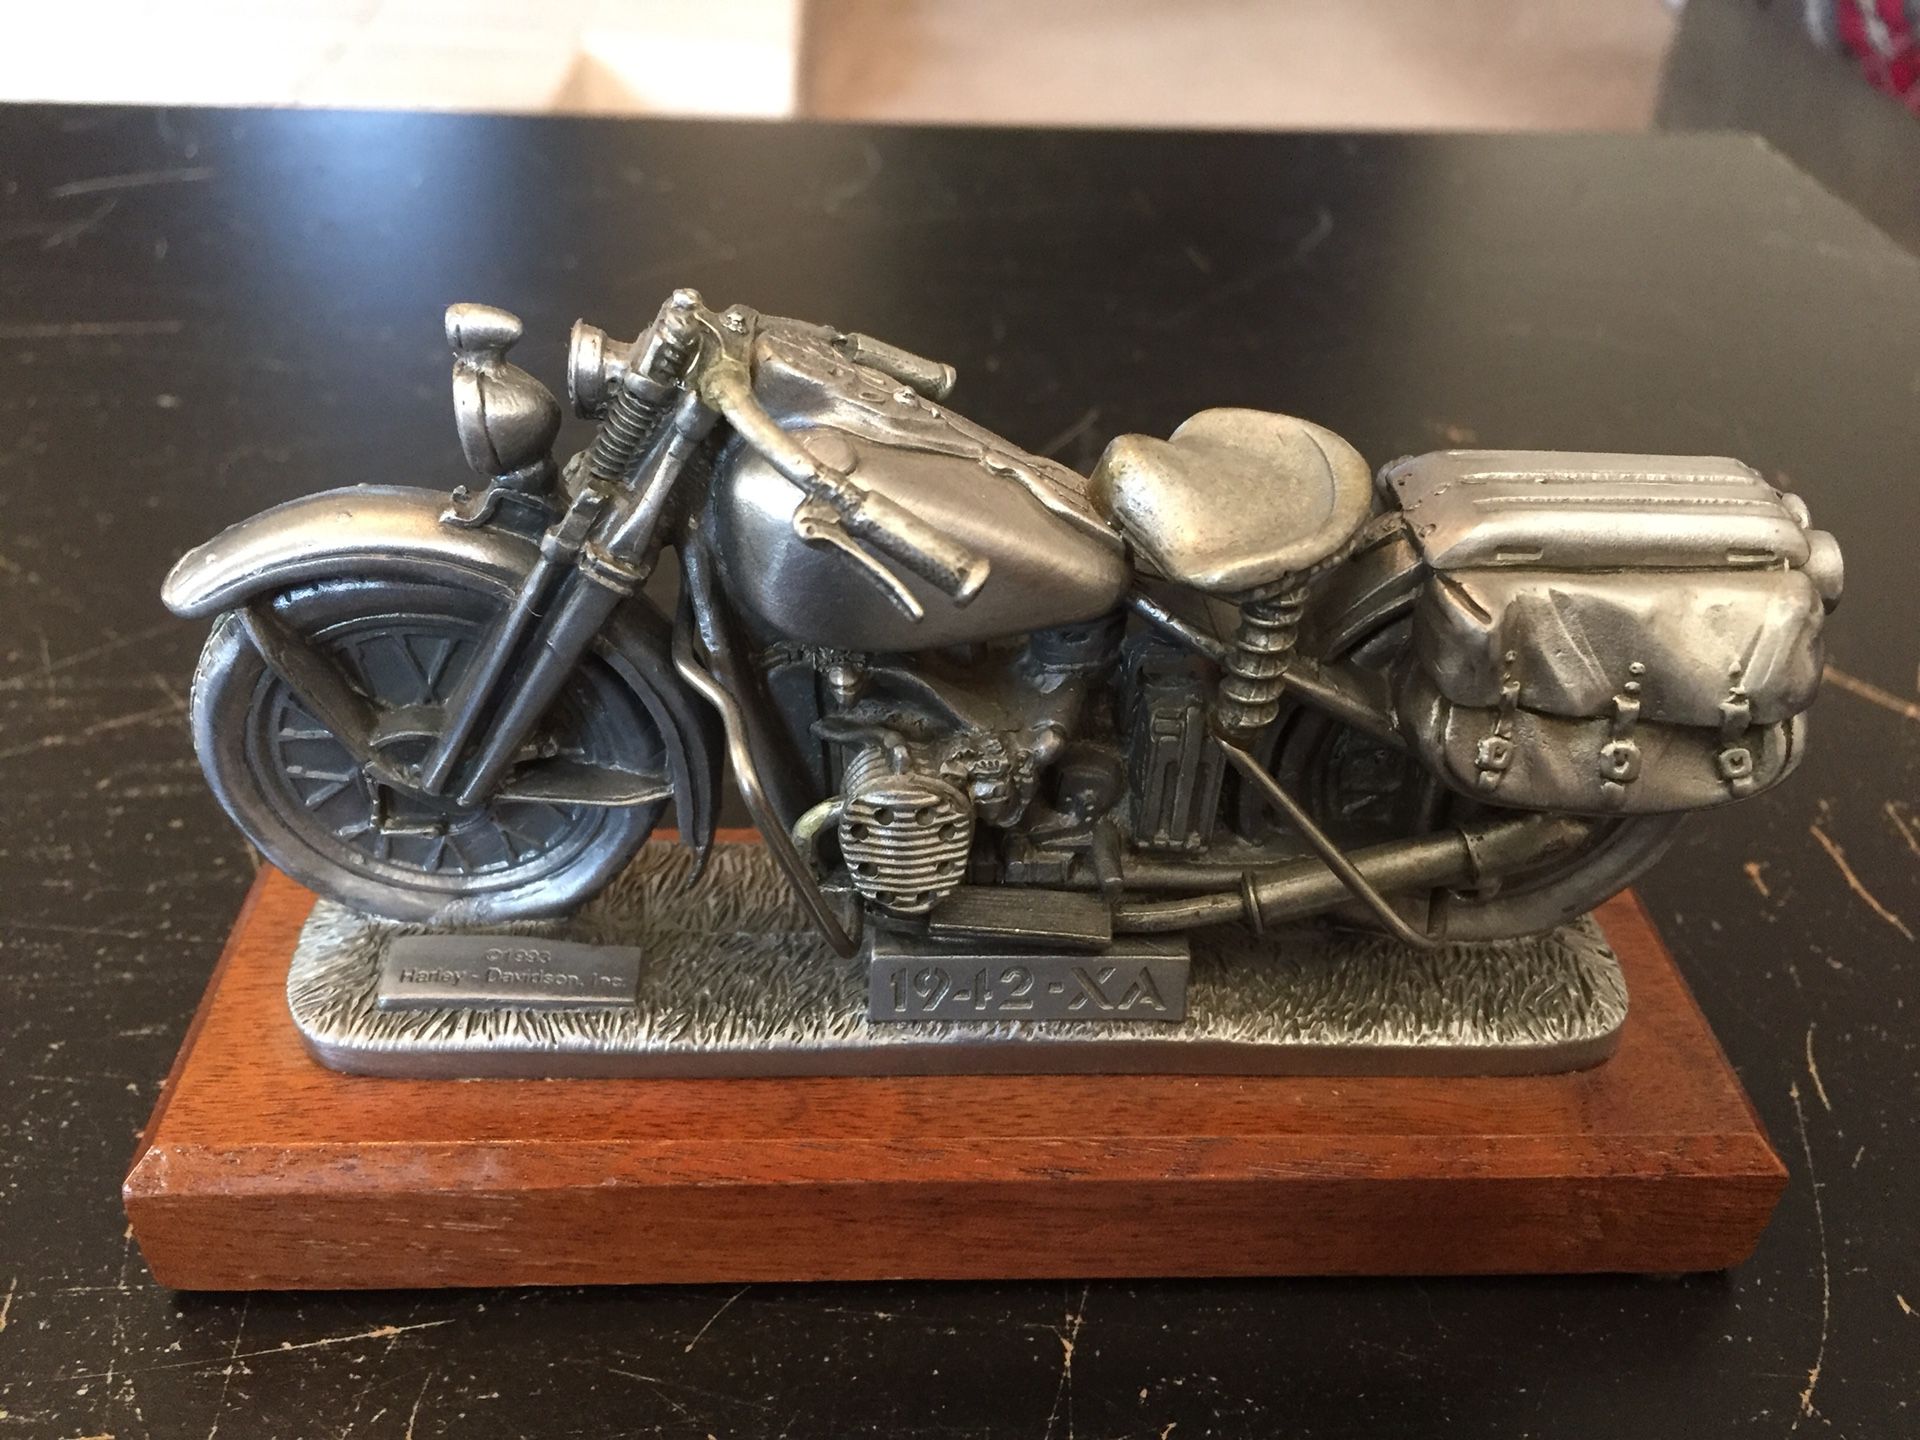 Harley Davidson pewter 1942 XA motorcycle